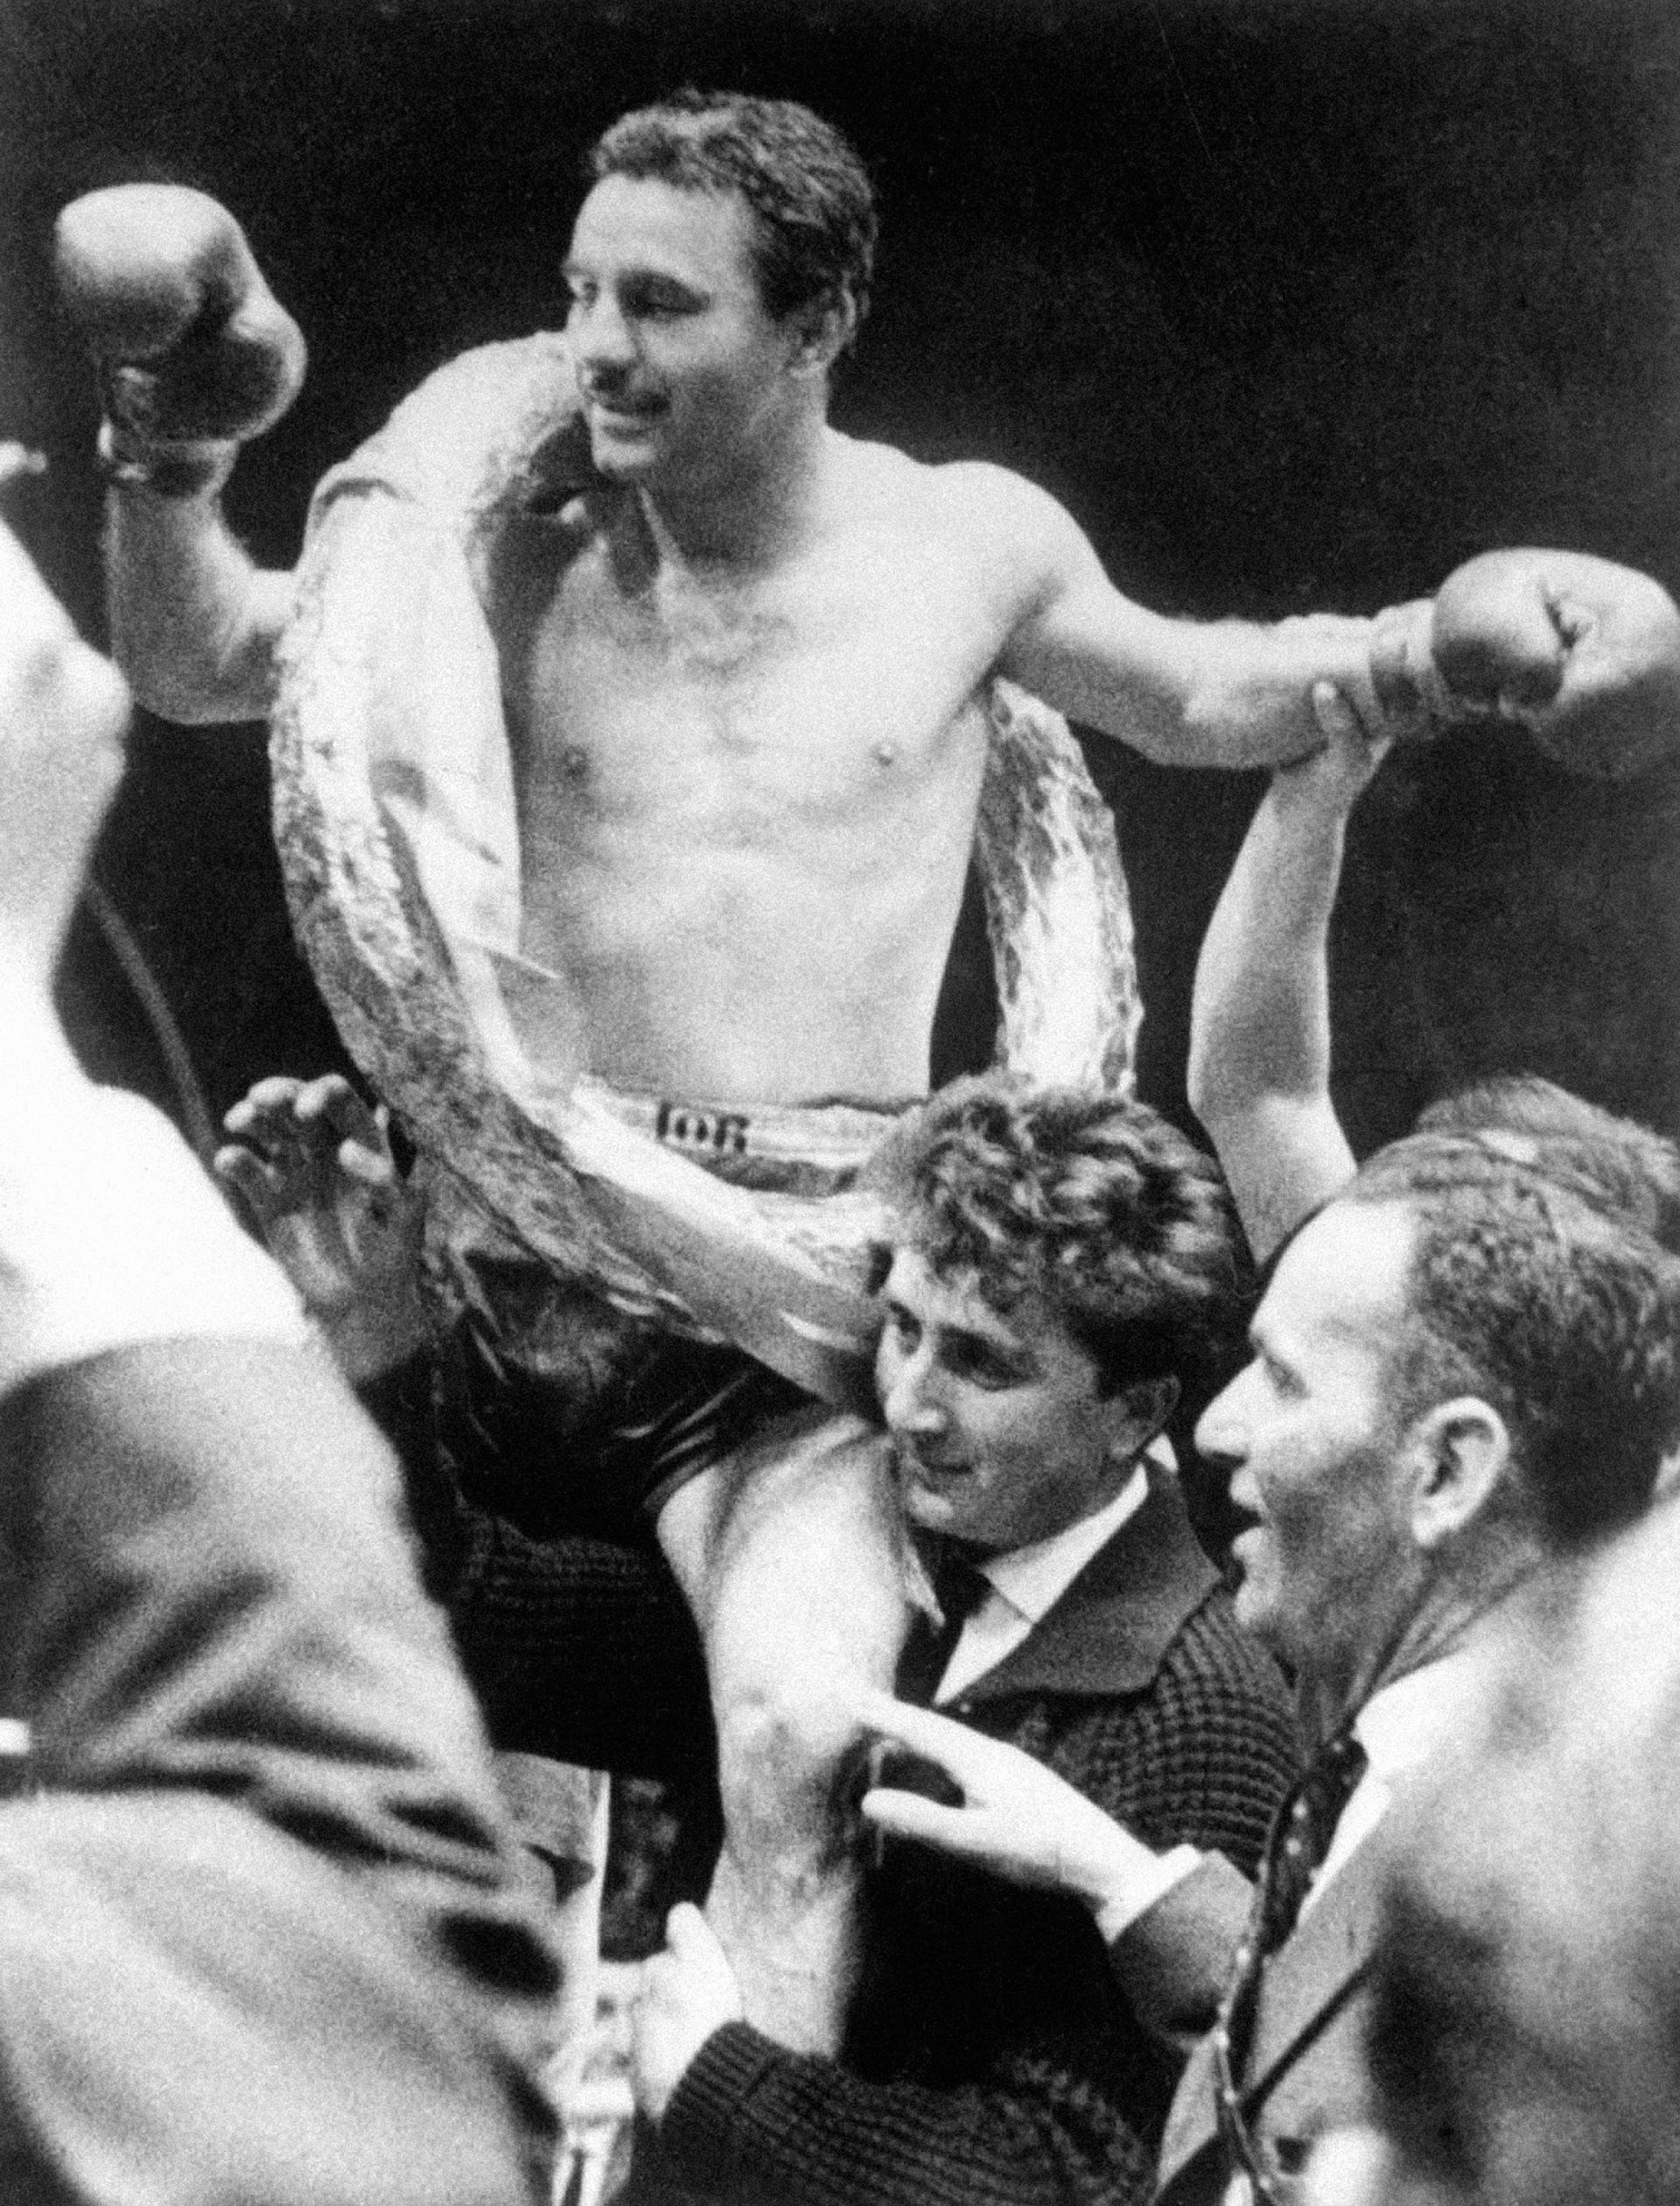 A bajuszos magyart a vállukra emelták bécsi rajongói, amikor Christensent legyőzve Európa-bajnok lett 1962. május 19-én (Fotó: MTI/OSZT)